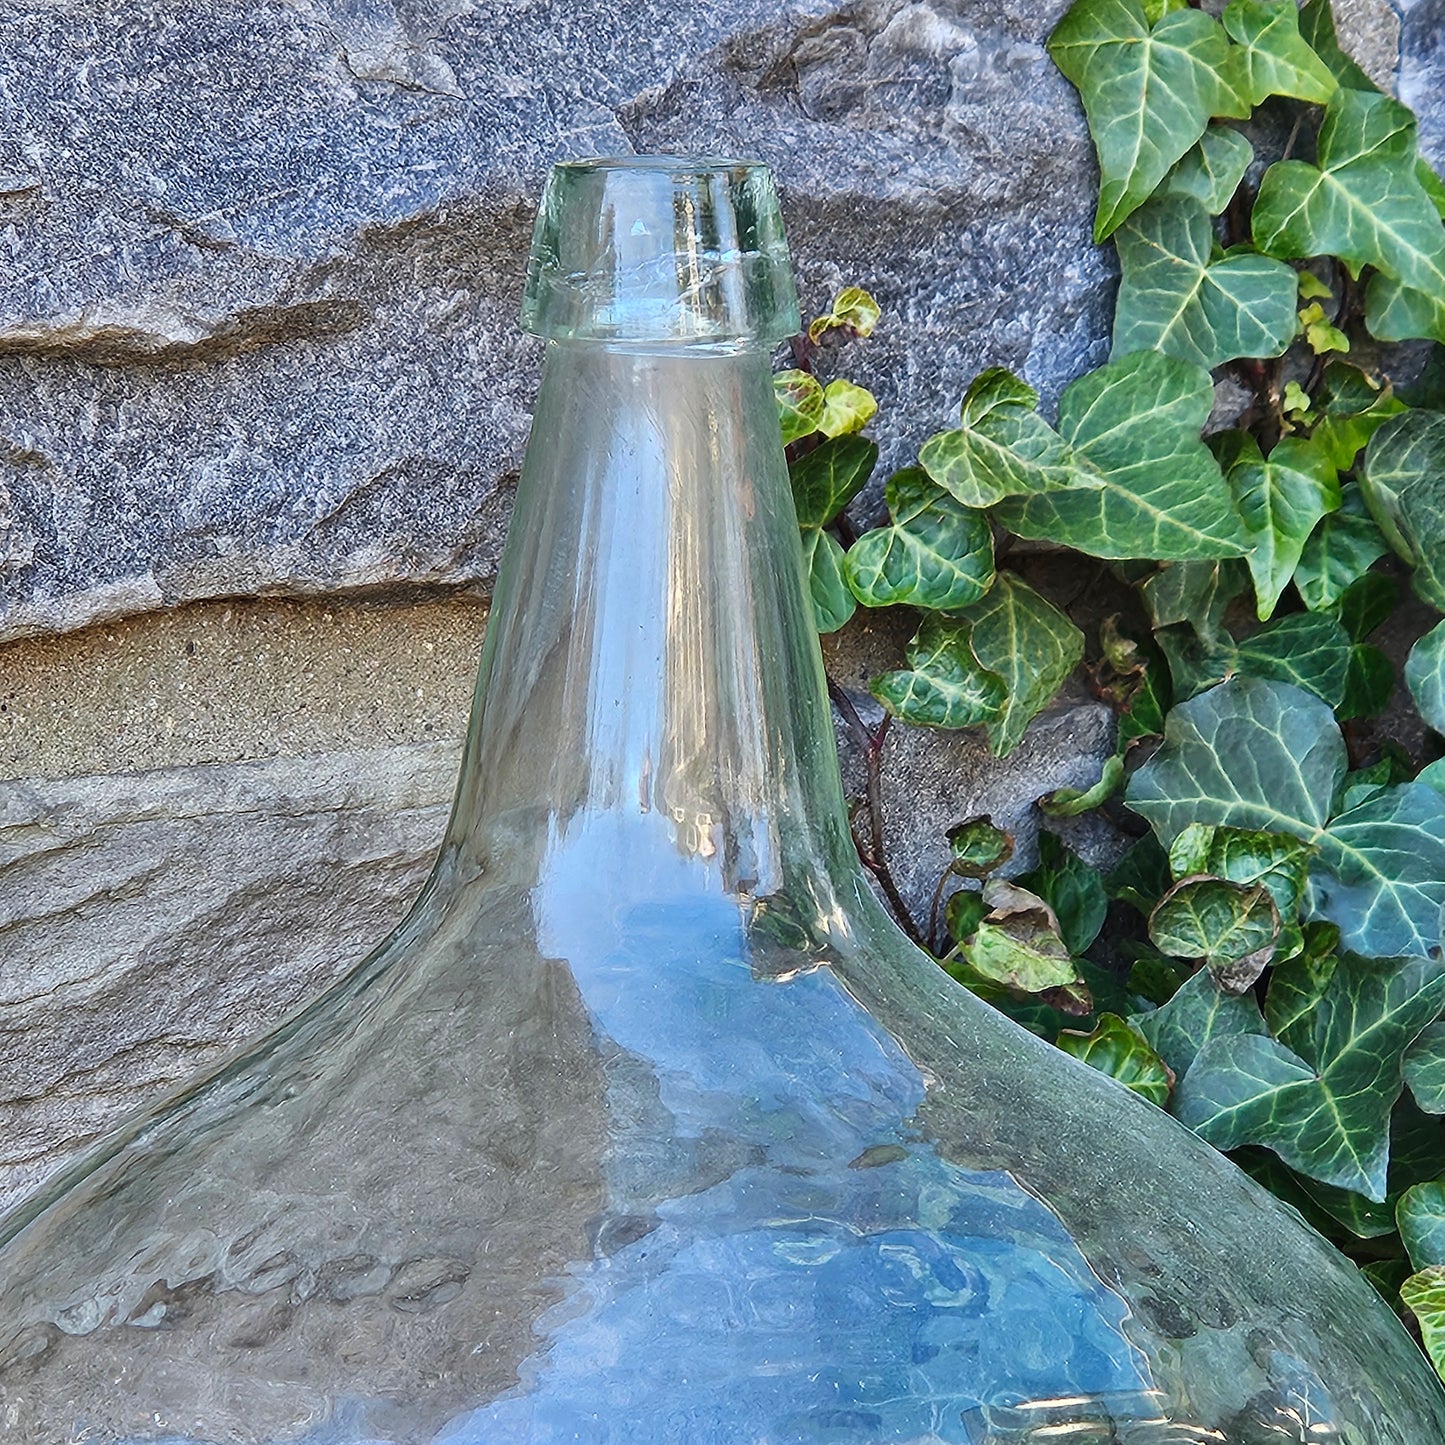 Large Vintage Glass Bottle